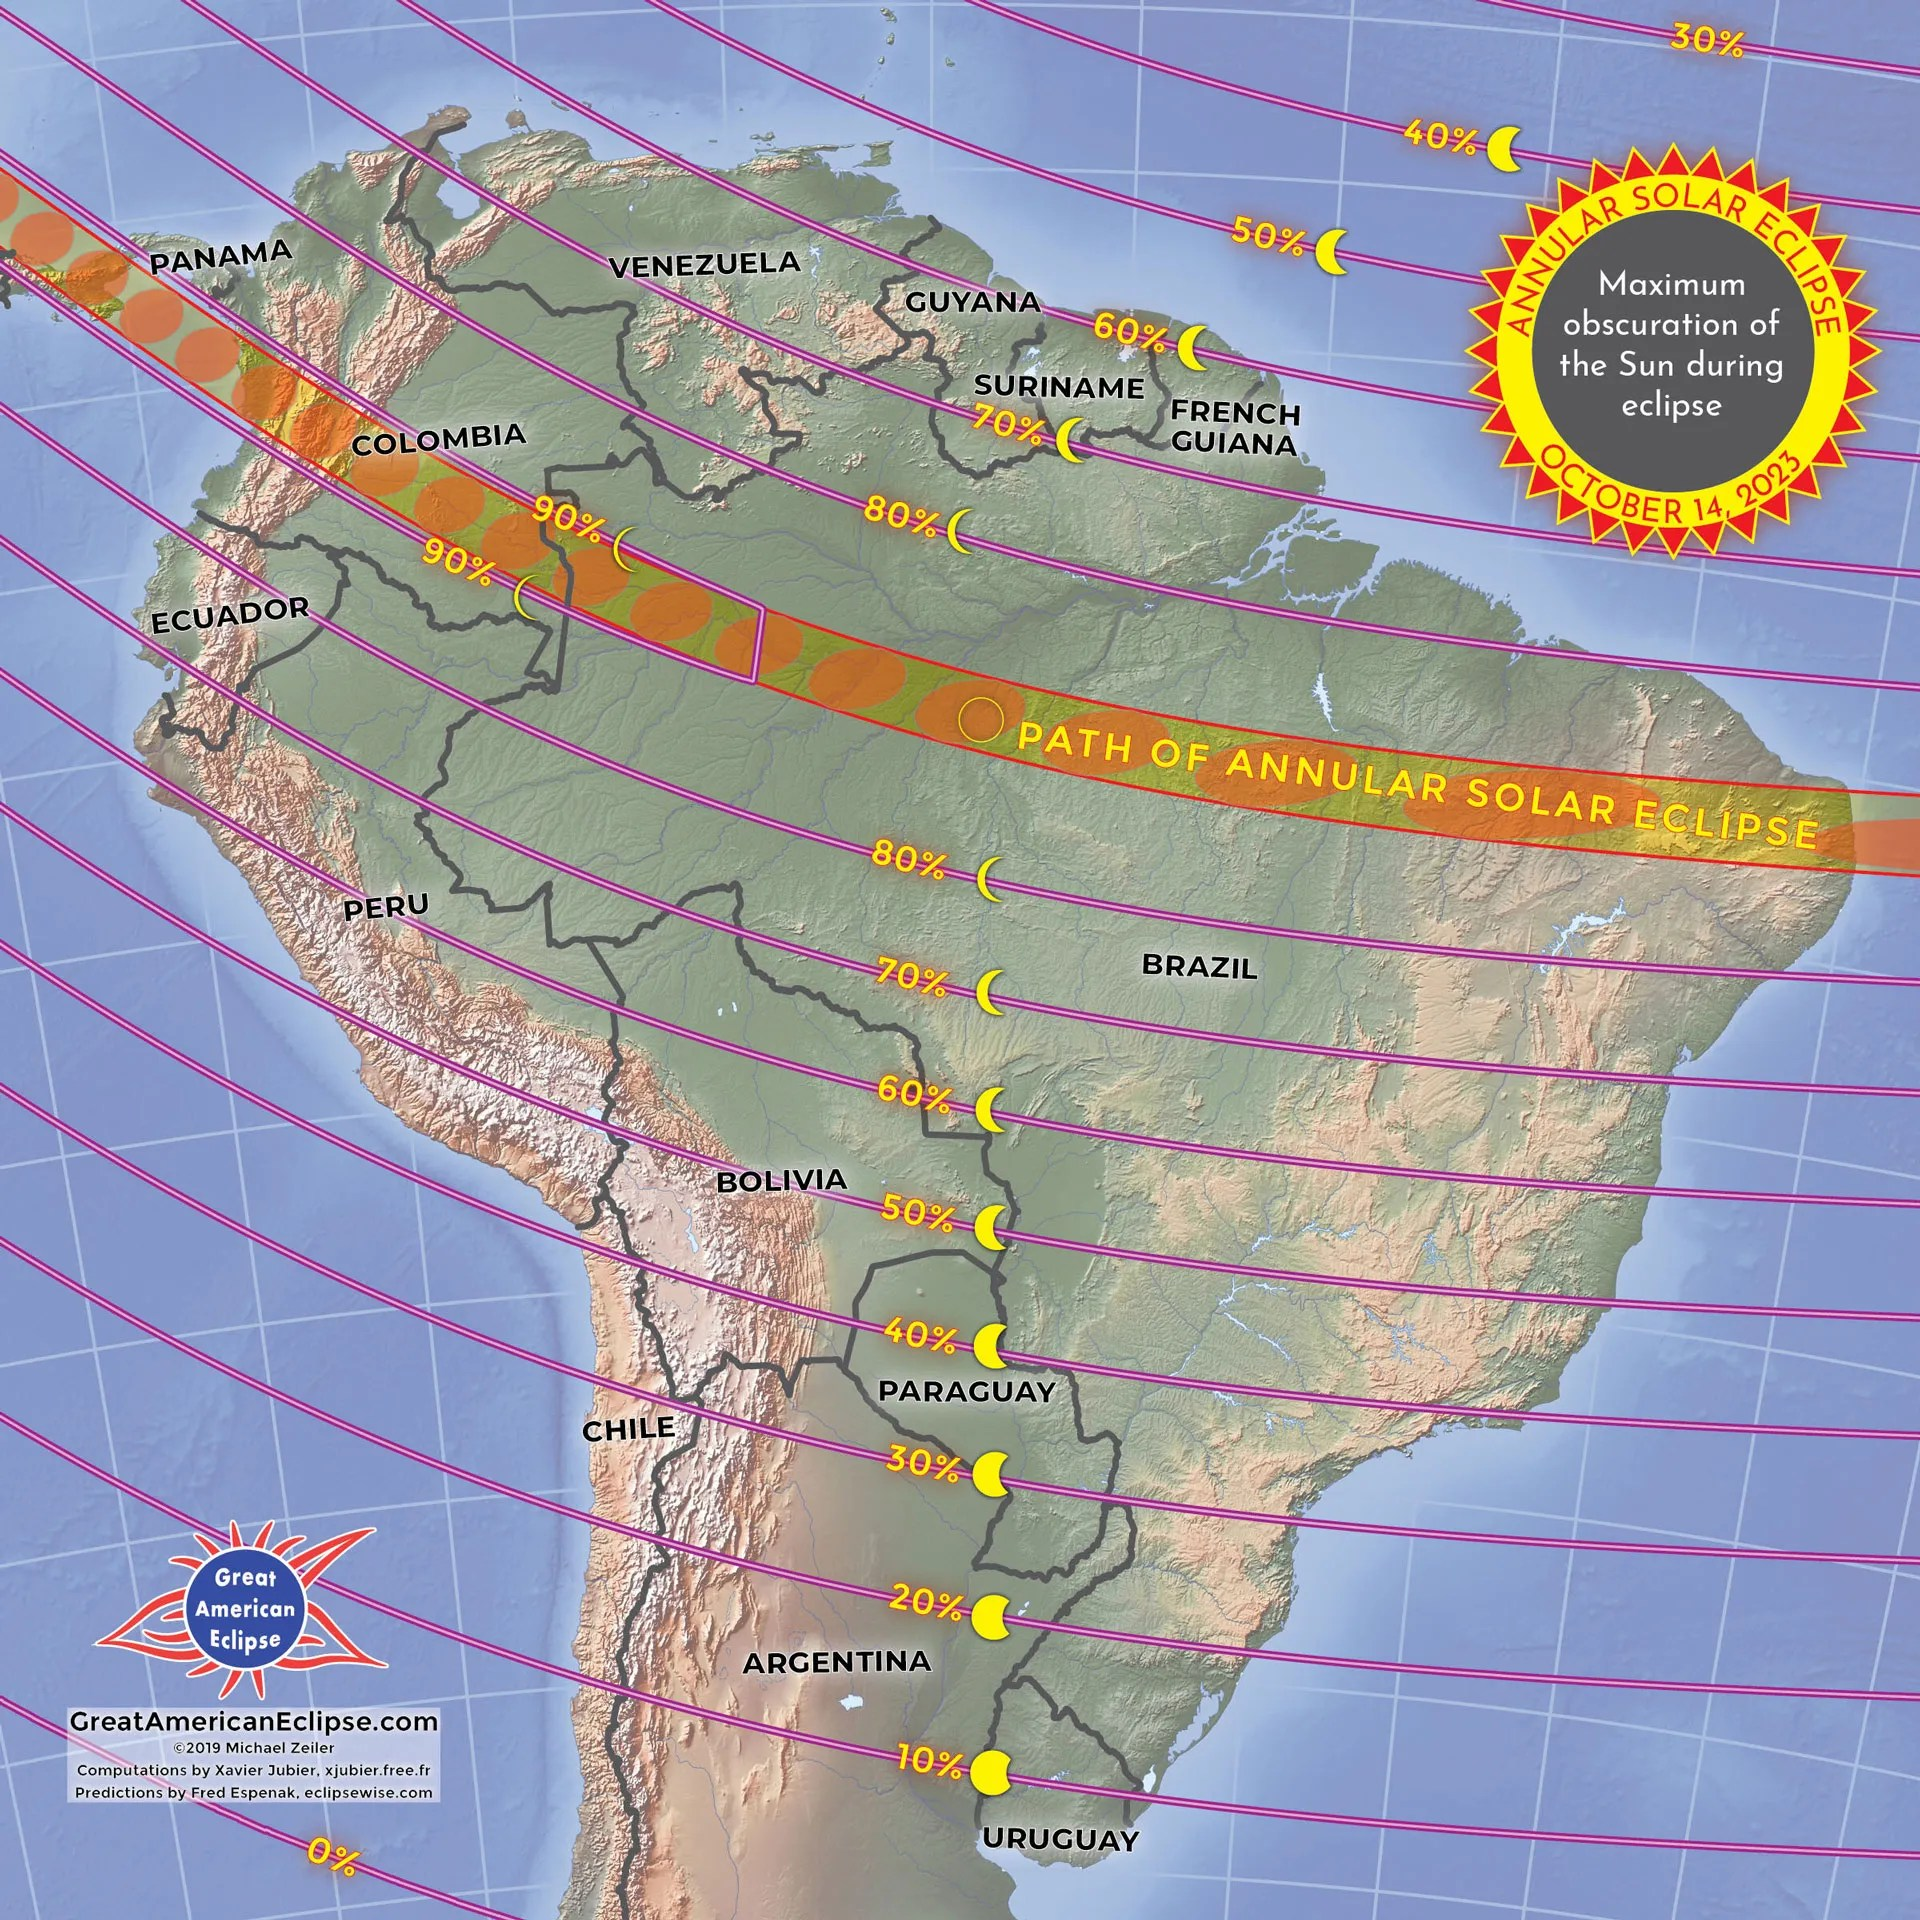 Esta imagen muestra un mapa en el cual se señala la trayectoria del eclipse solar anular sobre Sudamérica.